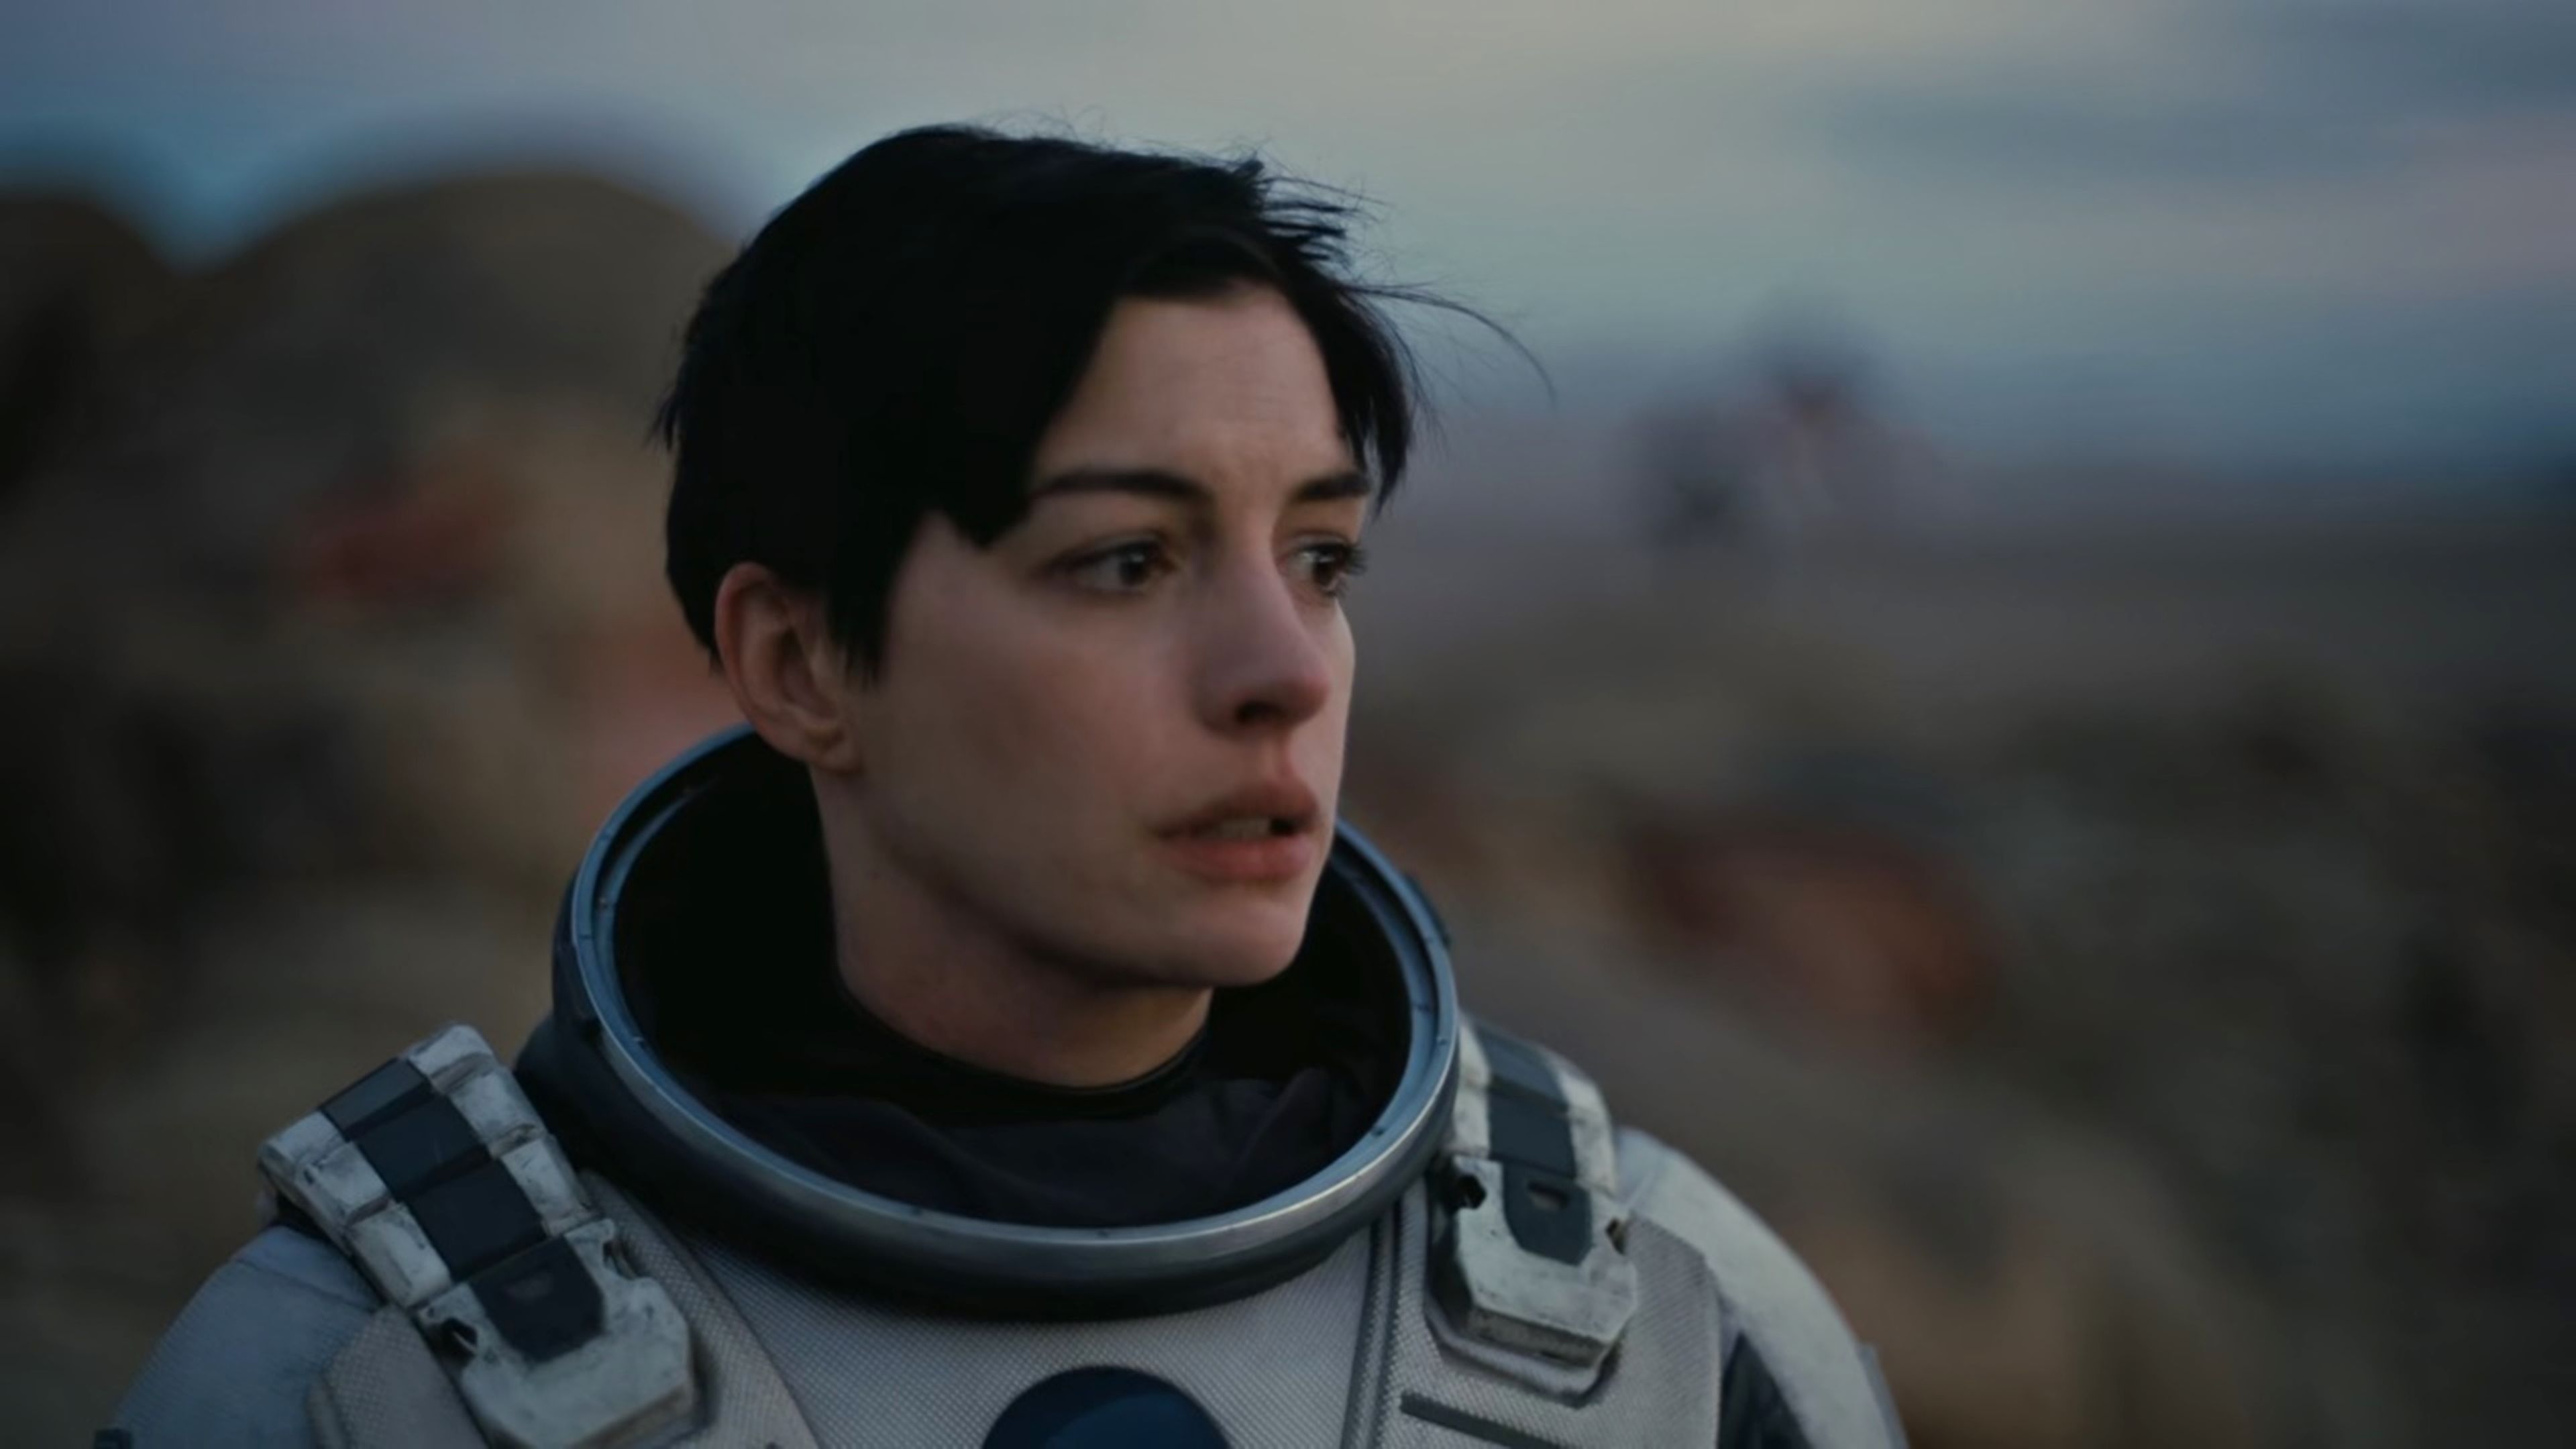 Amelia Brand (Anne Hathaway) - Interstellar